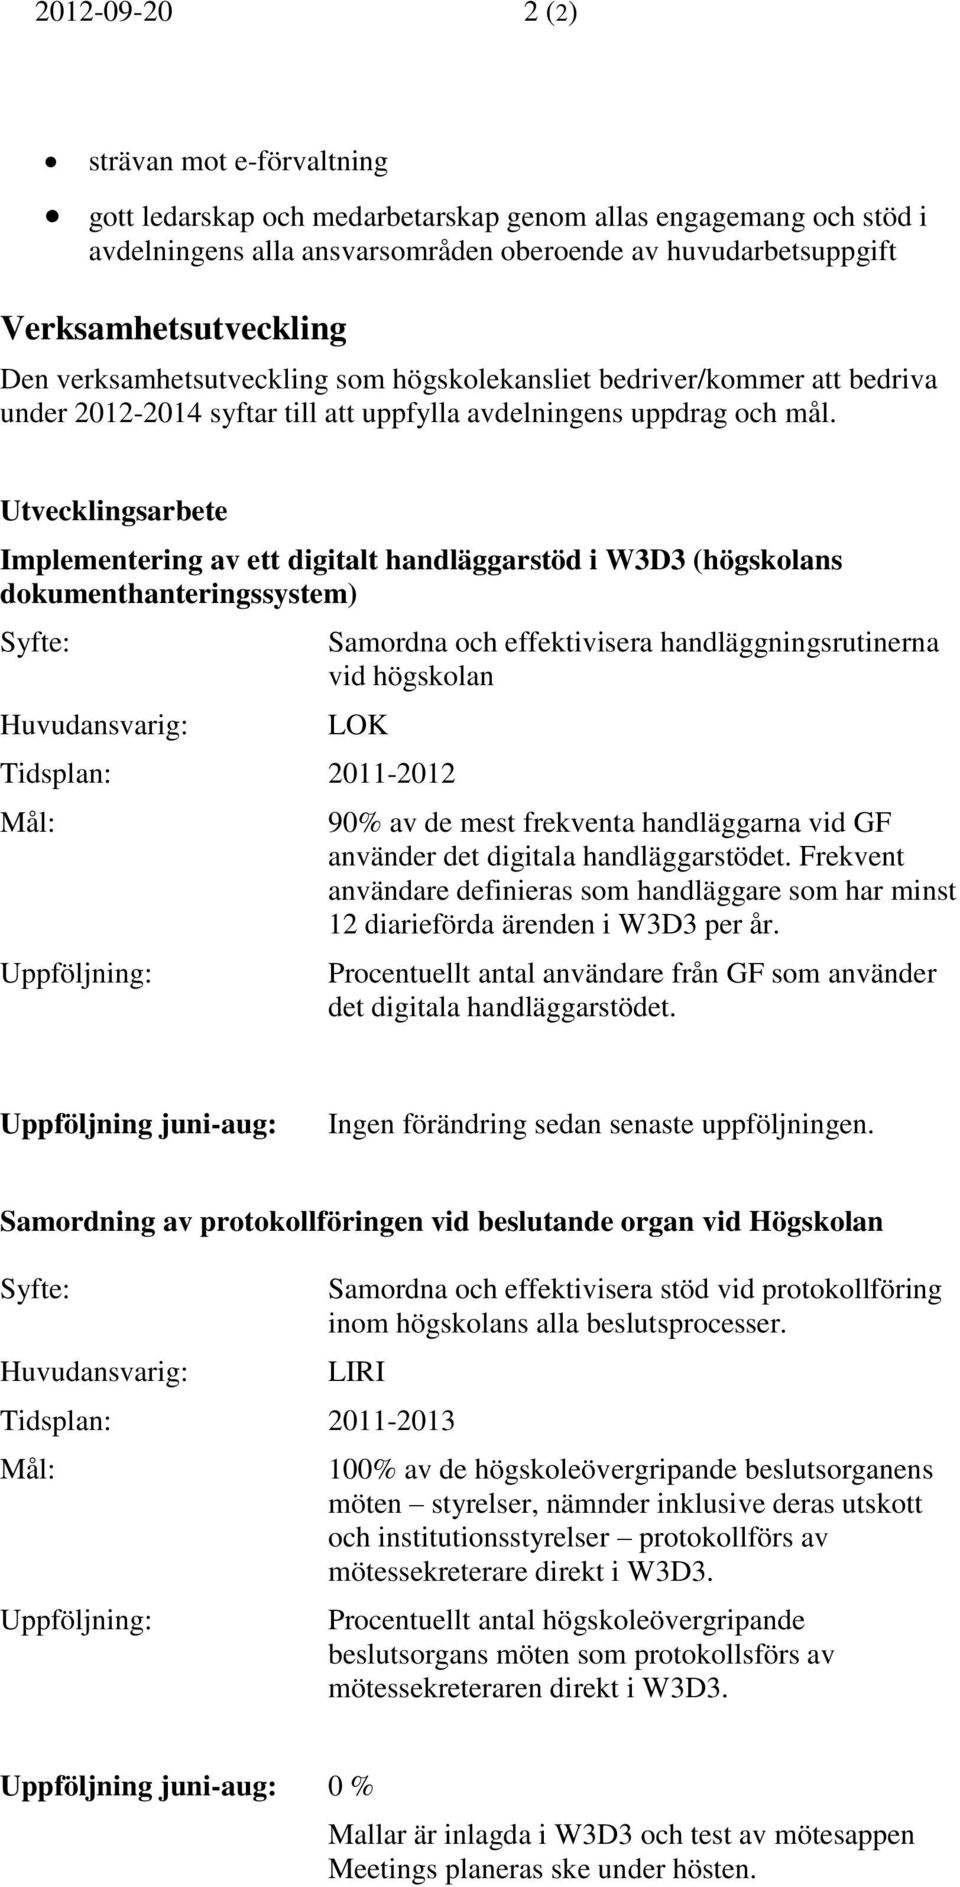 Utvecklingsarbete Implementering av ett digitalt handläggarstöd i W3D3 (högskolans dokumenthanteringssystem) Samordna och effektivisera handläggningsrutinerna vid högskolan LOK Tidsplan: 2011-2012